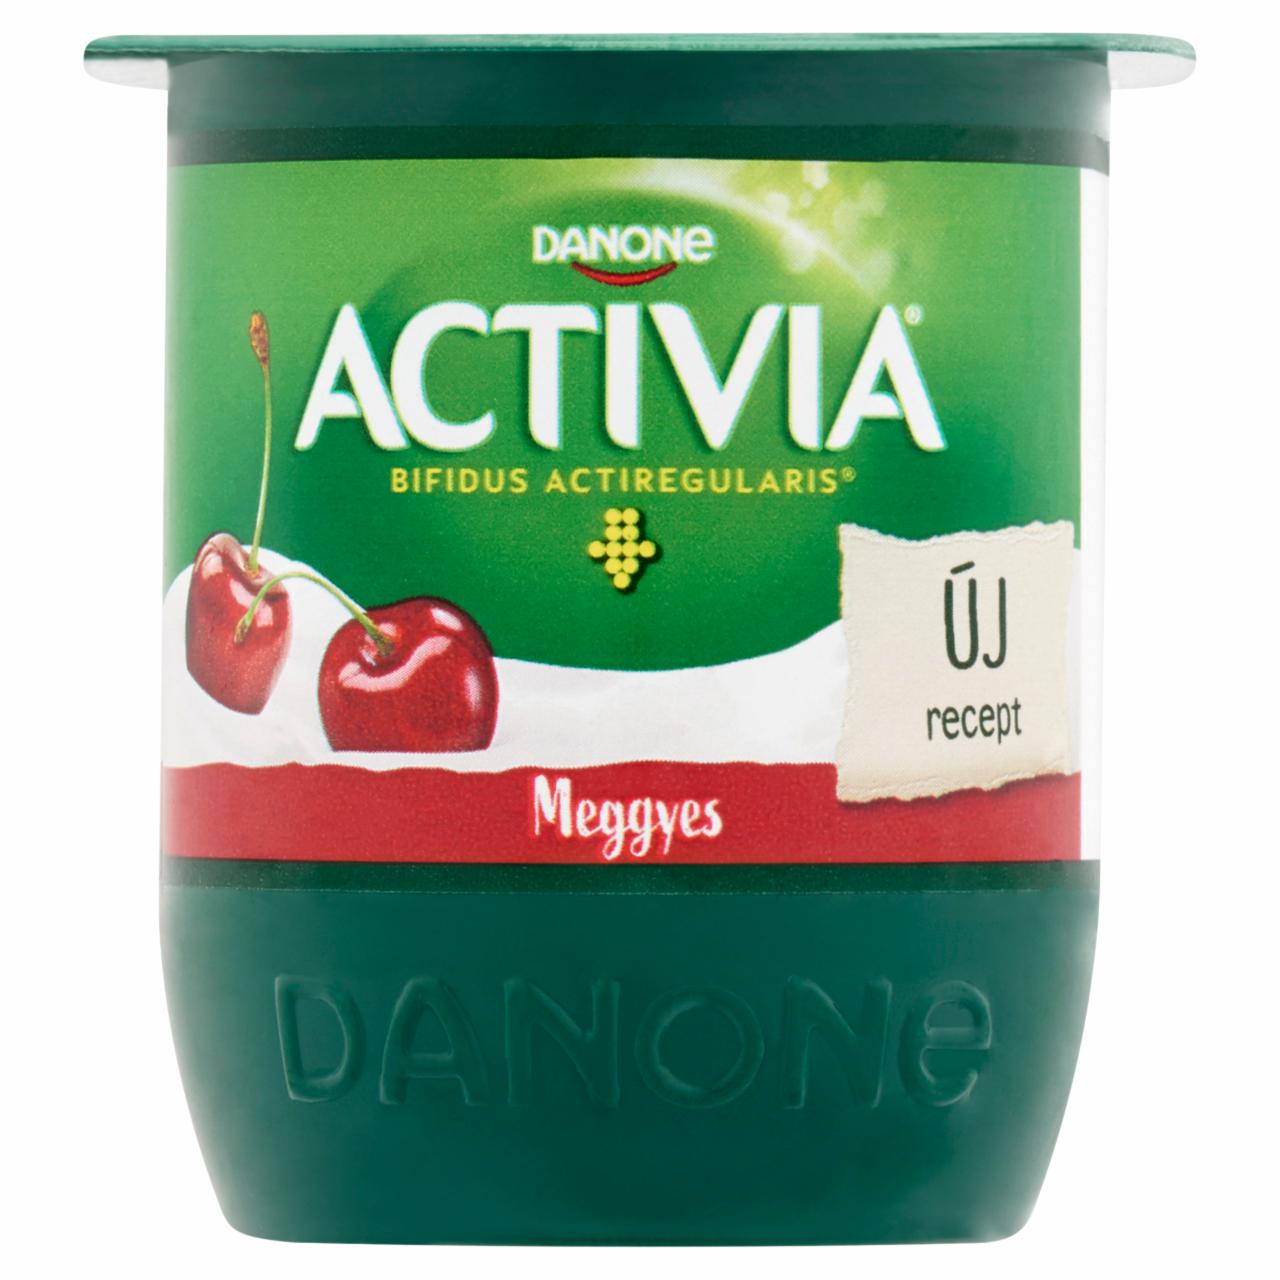 Képek - Danone Activia élőflórás, zsírszegény meggyes joghurt 125 g